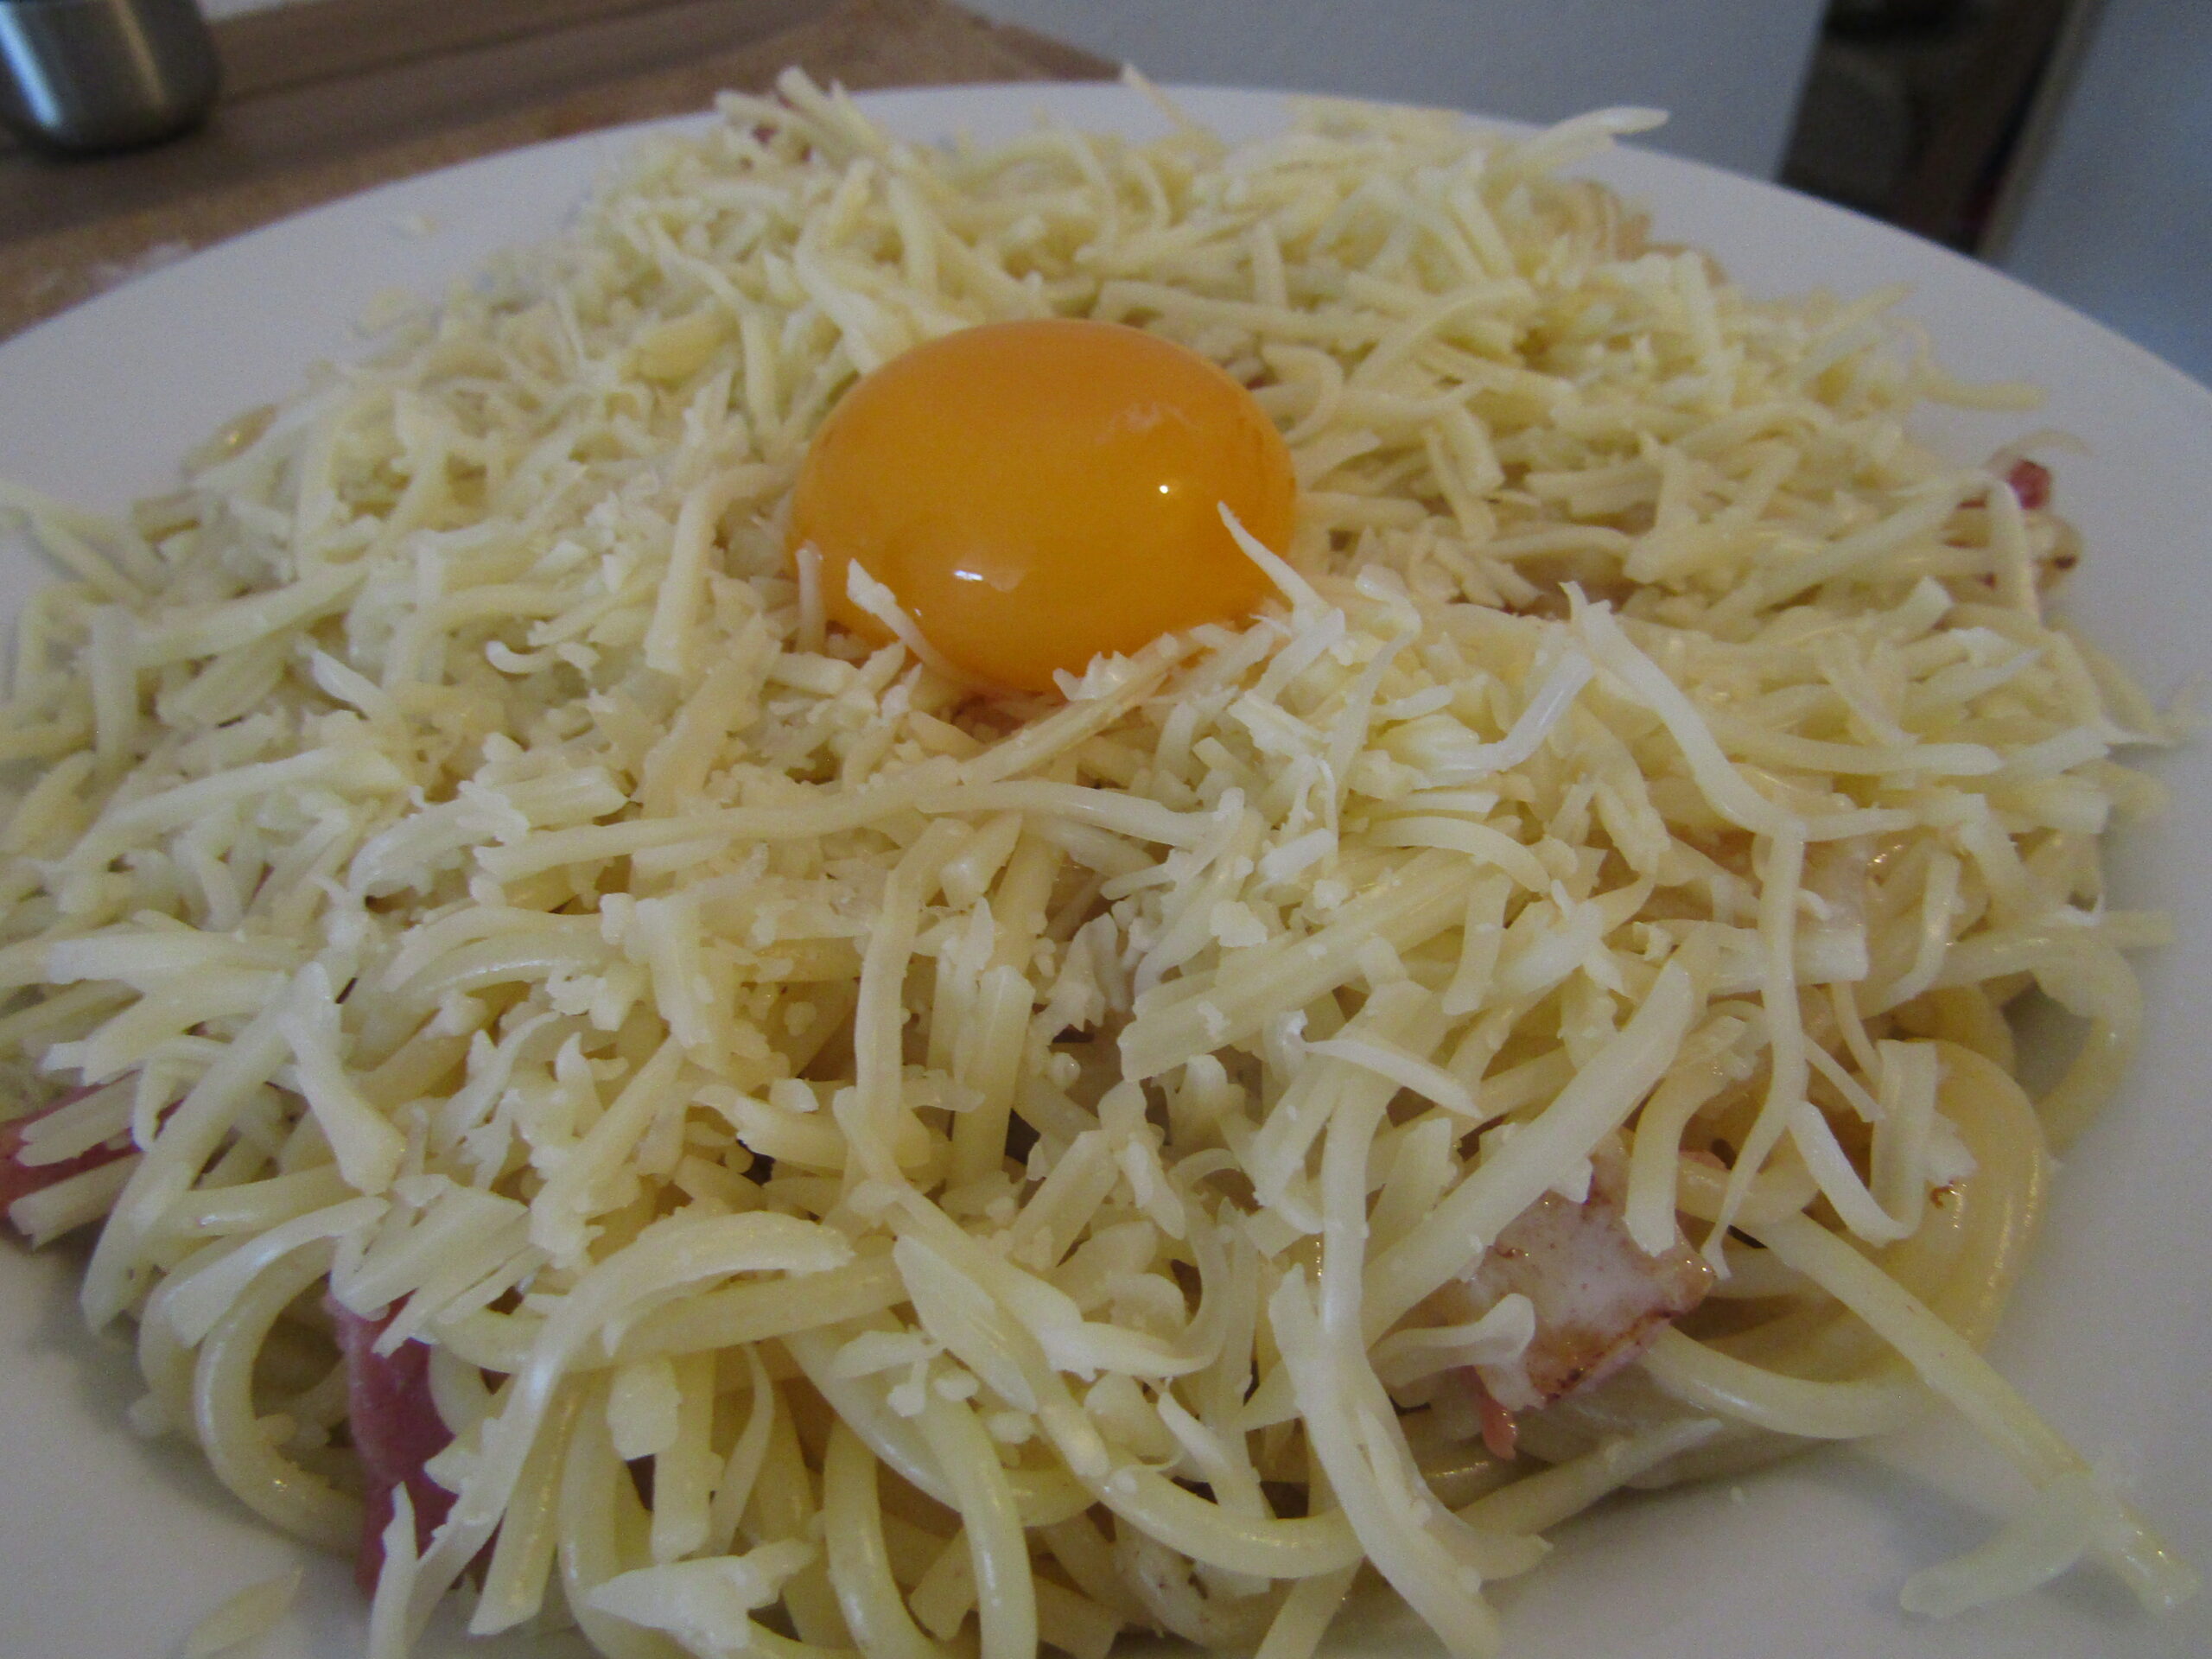 Un plat de spaghettis à la carbonara avec un œuf et du fromage râpé dessus.